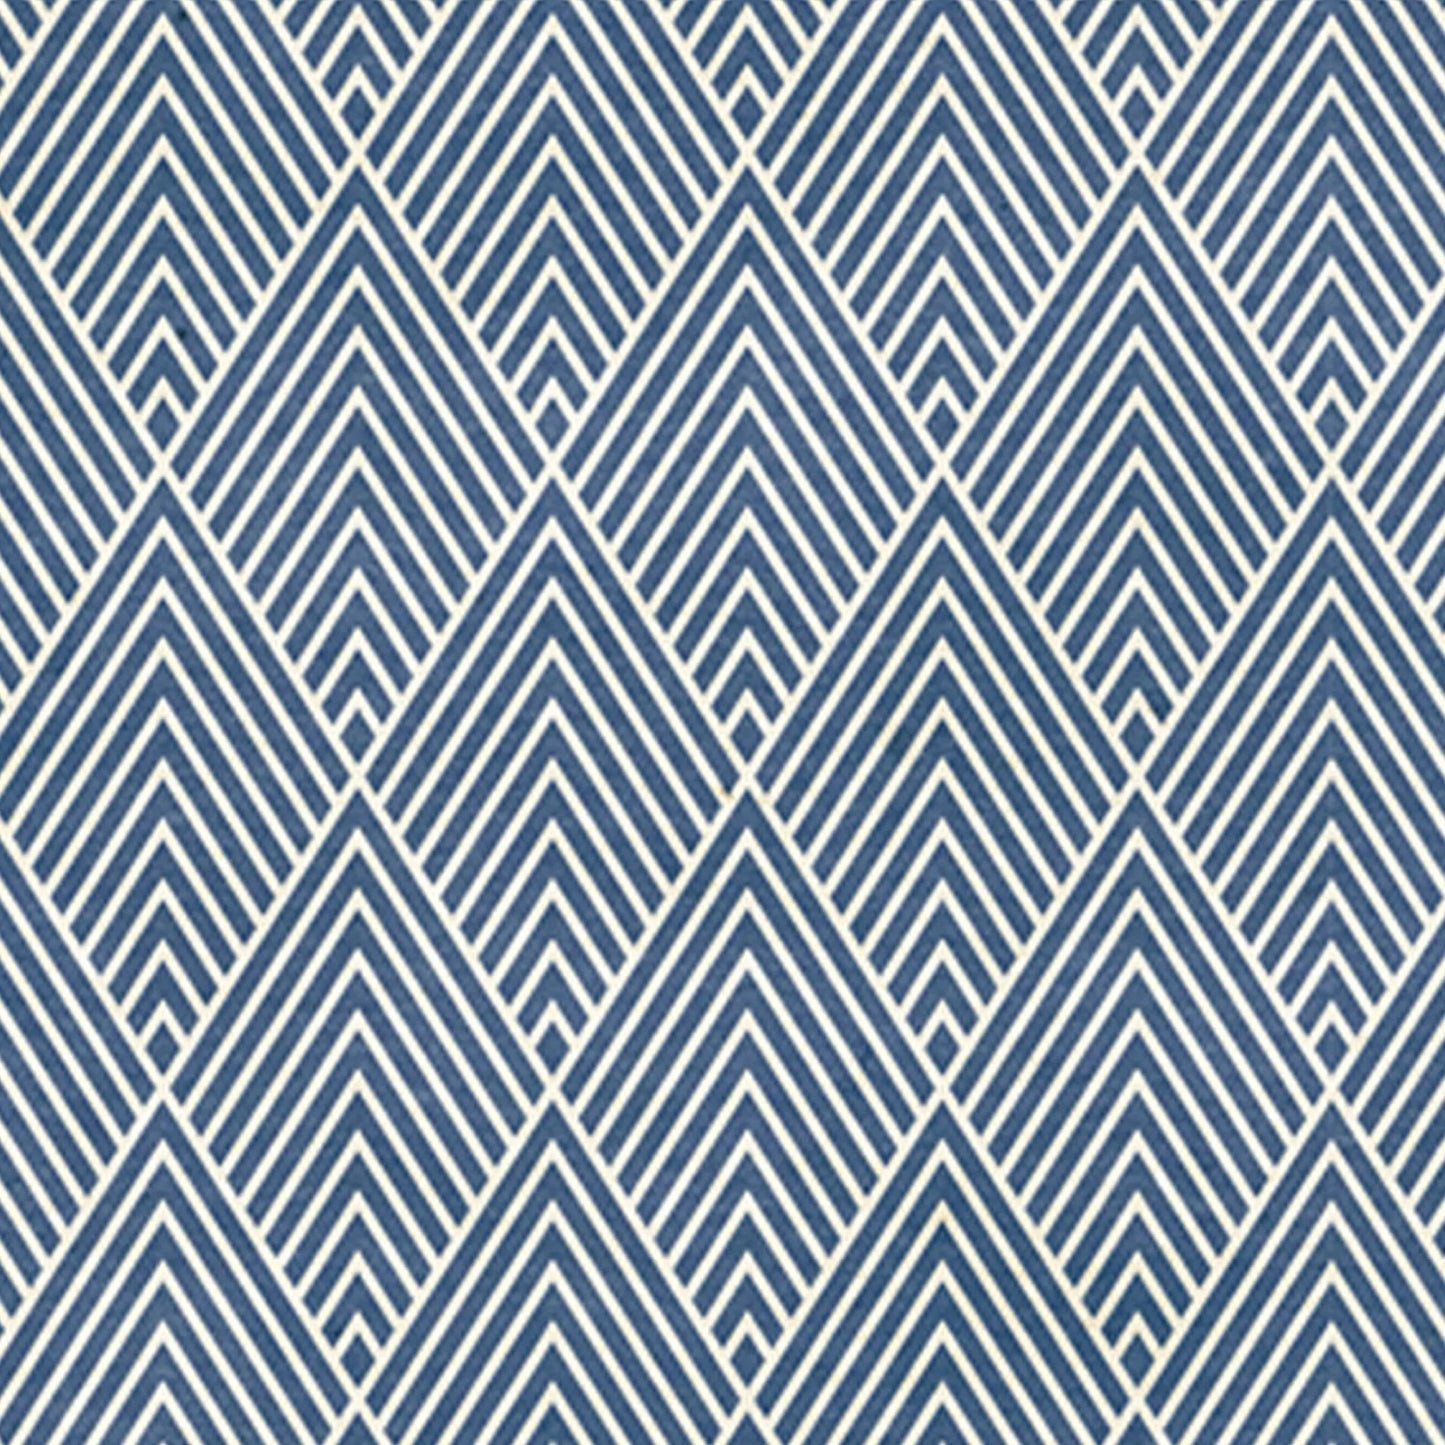 “White & Blue Lines” Wallpaper | WP 209